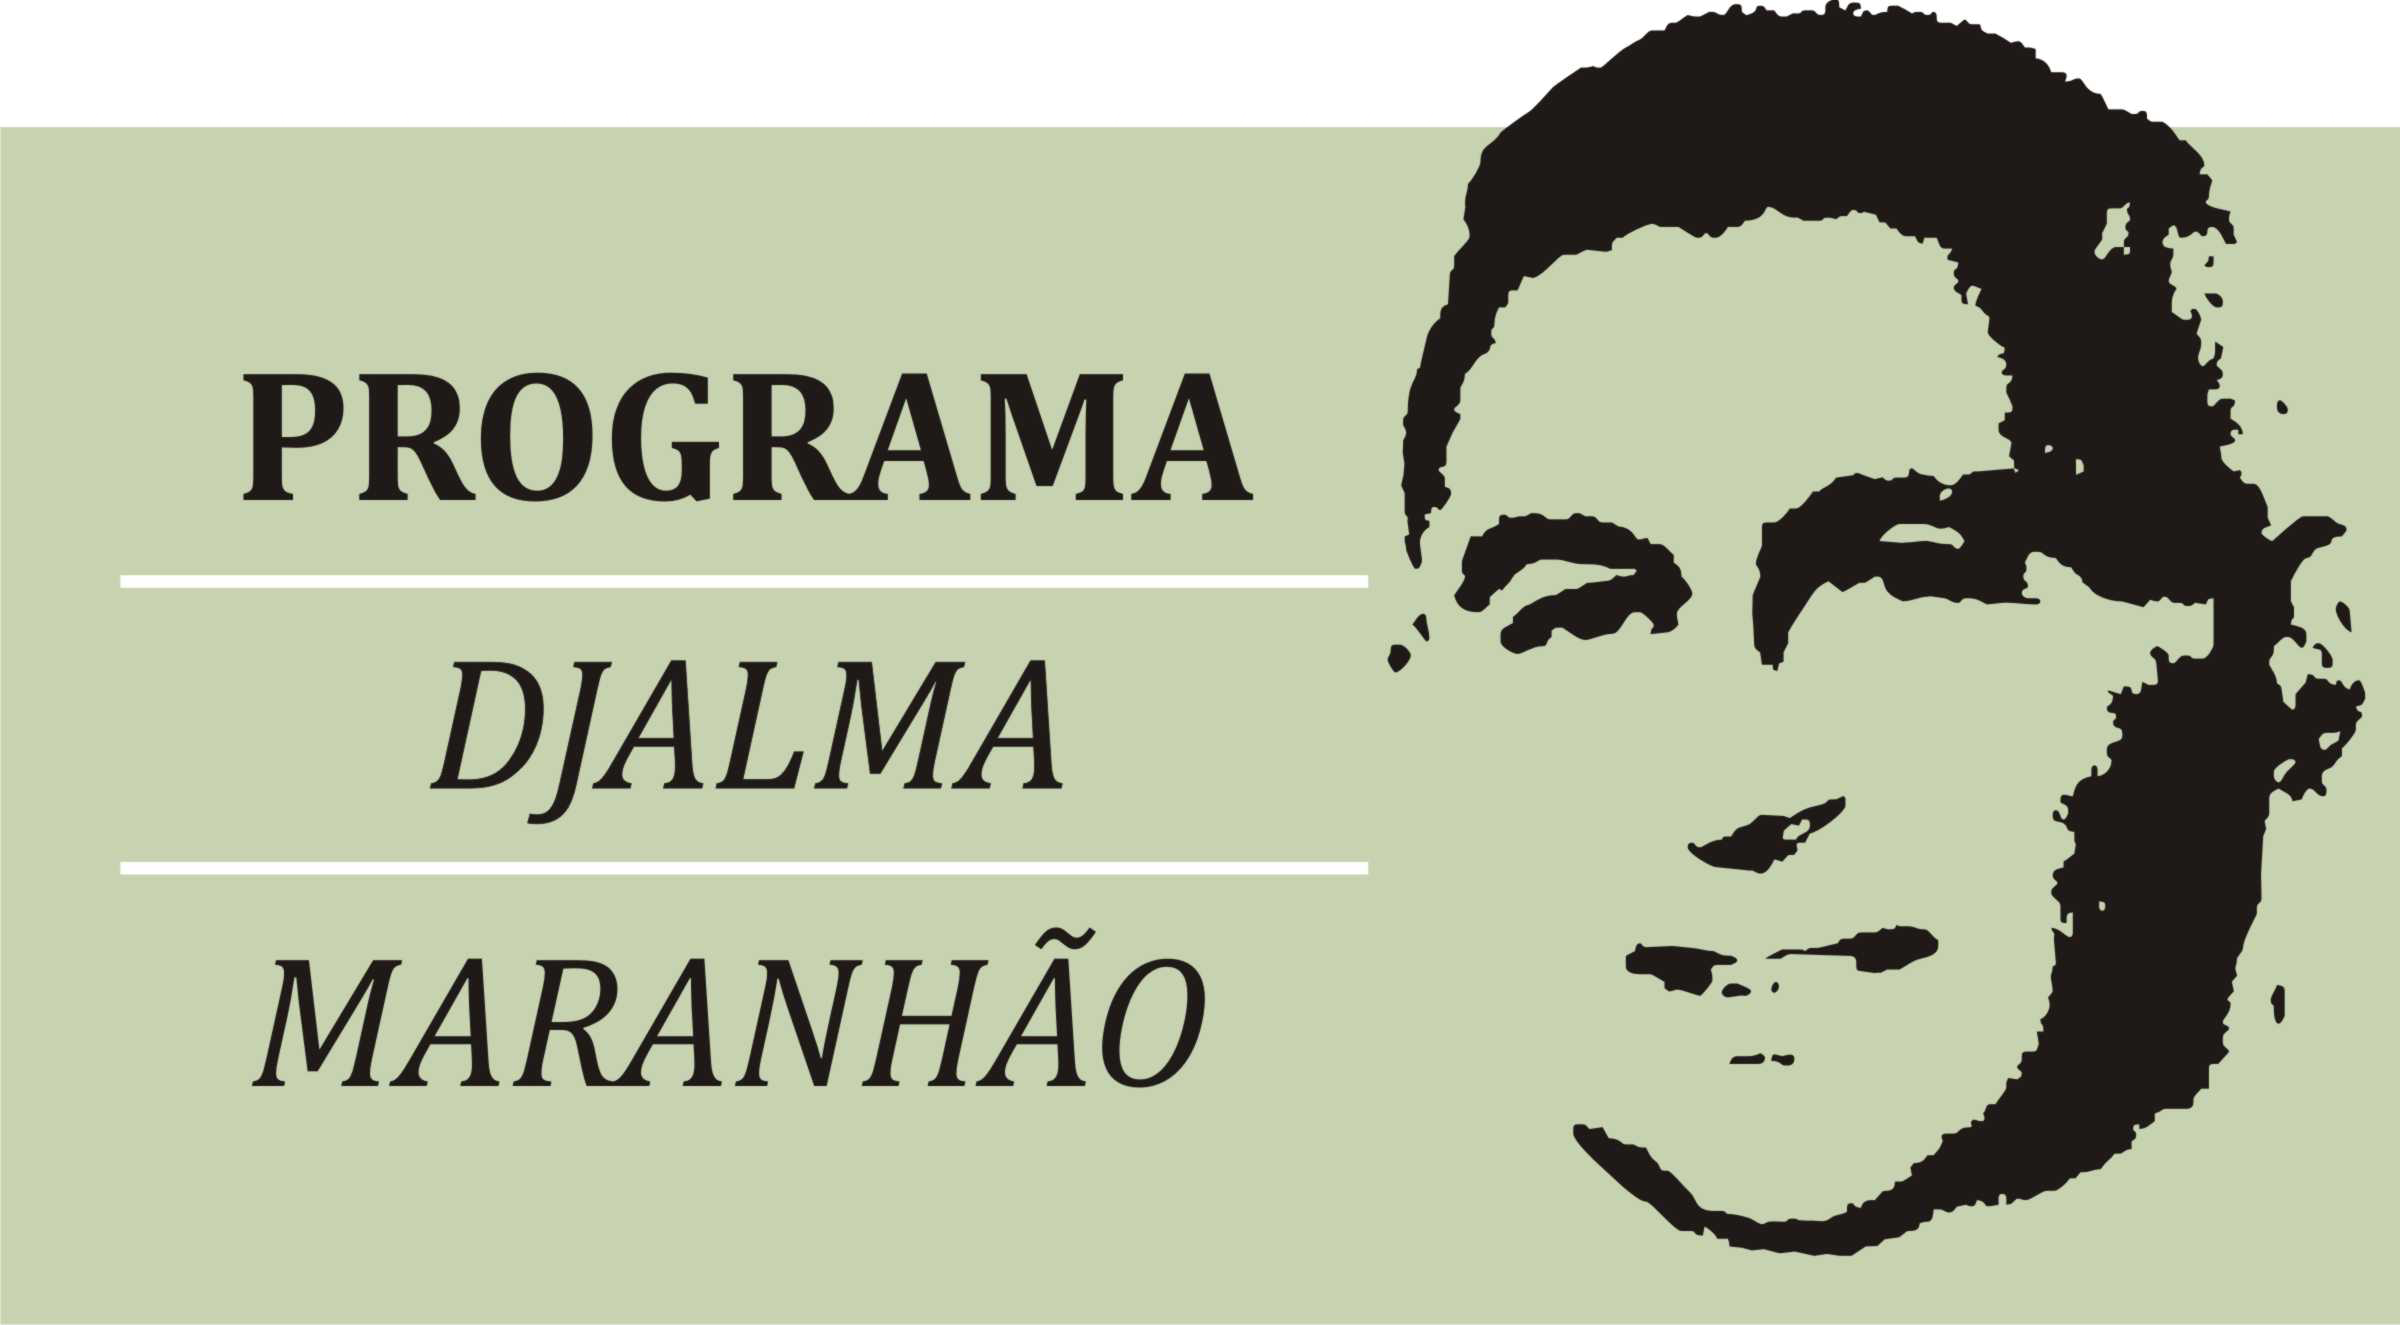 Lei Djalma Maranhão